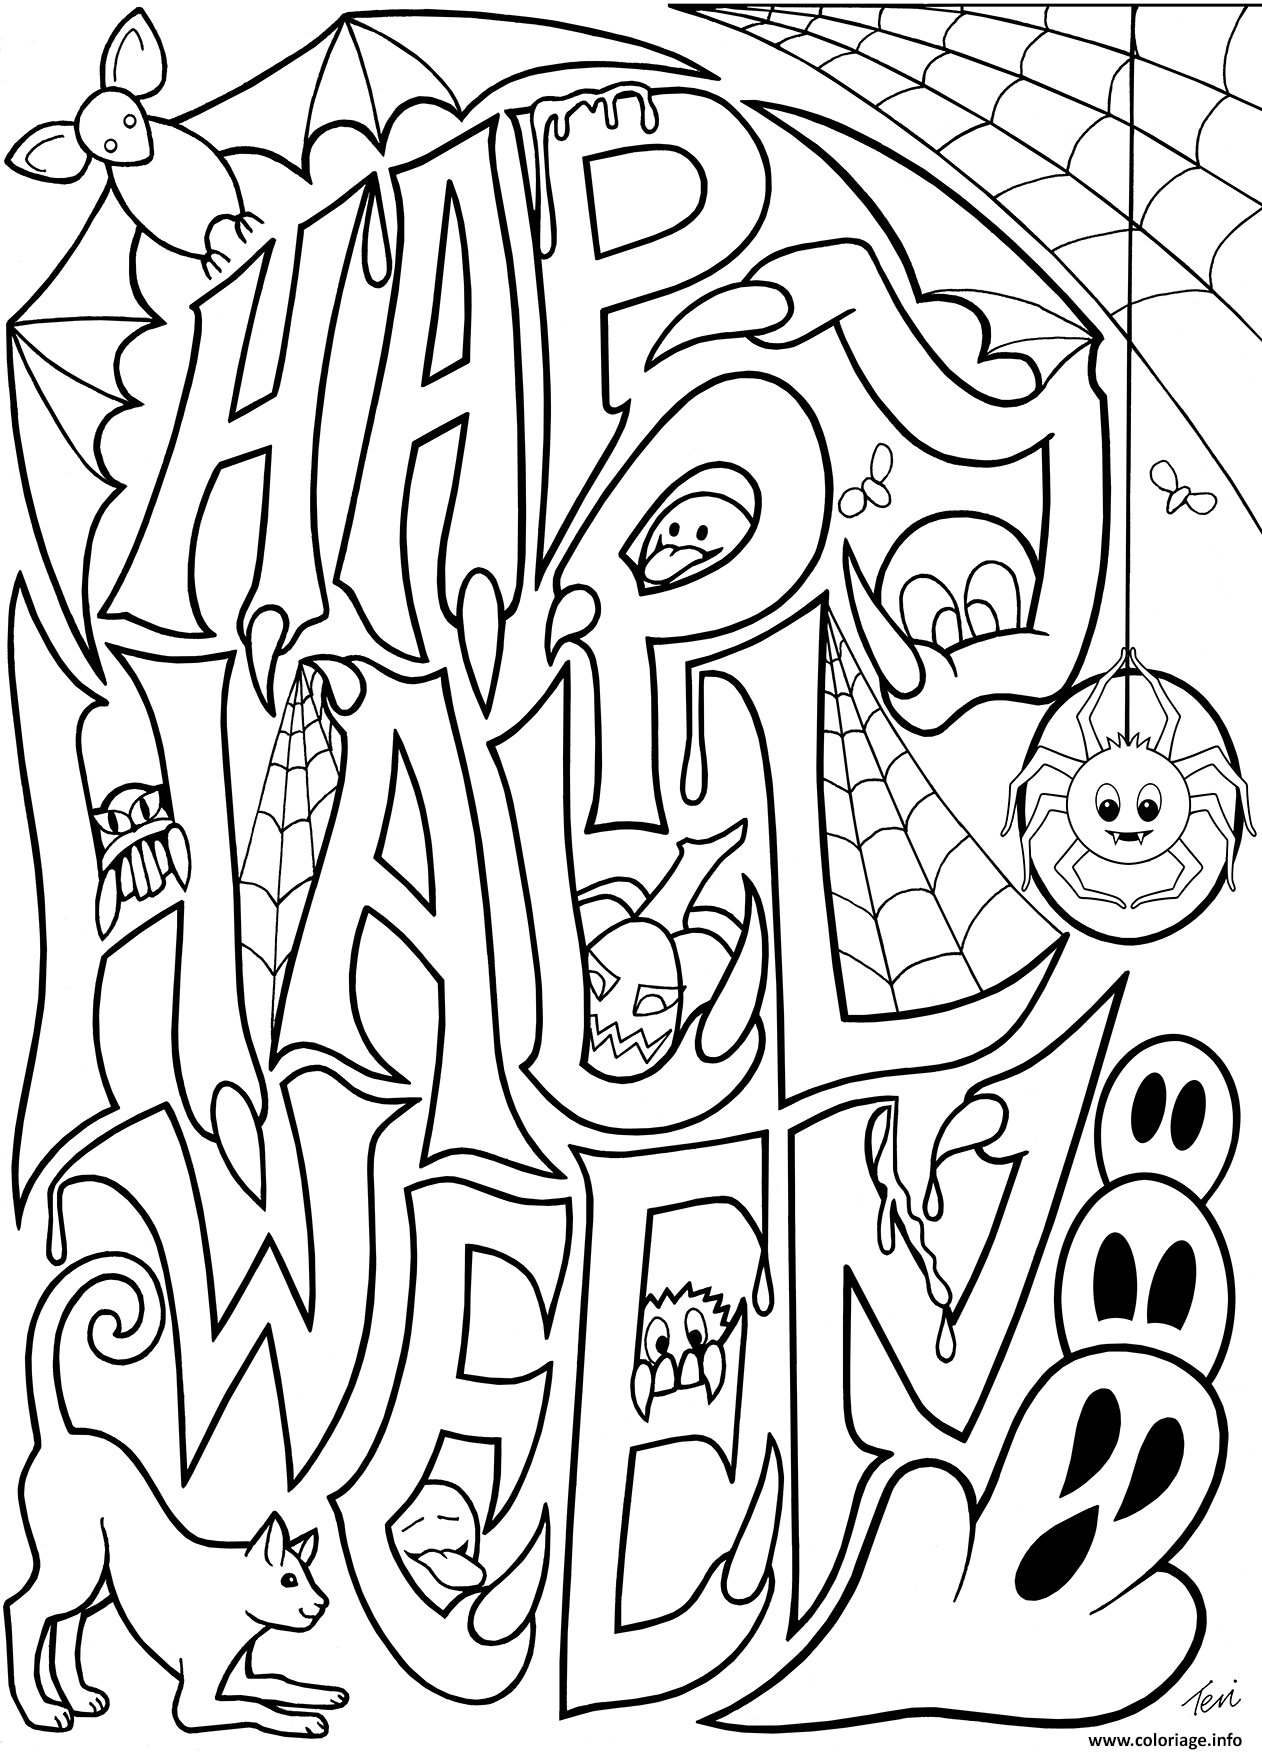 Coloriage halloween adulte happy halloween doodle  JeColorie.com